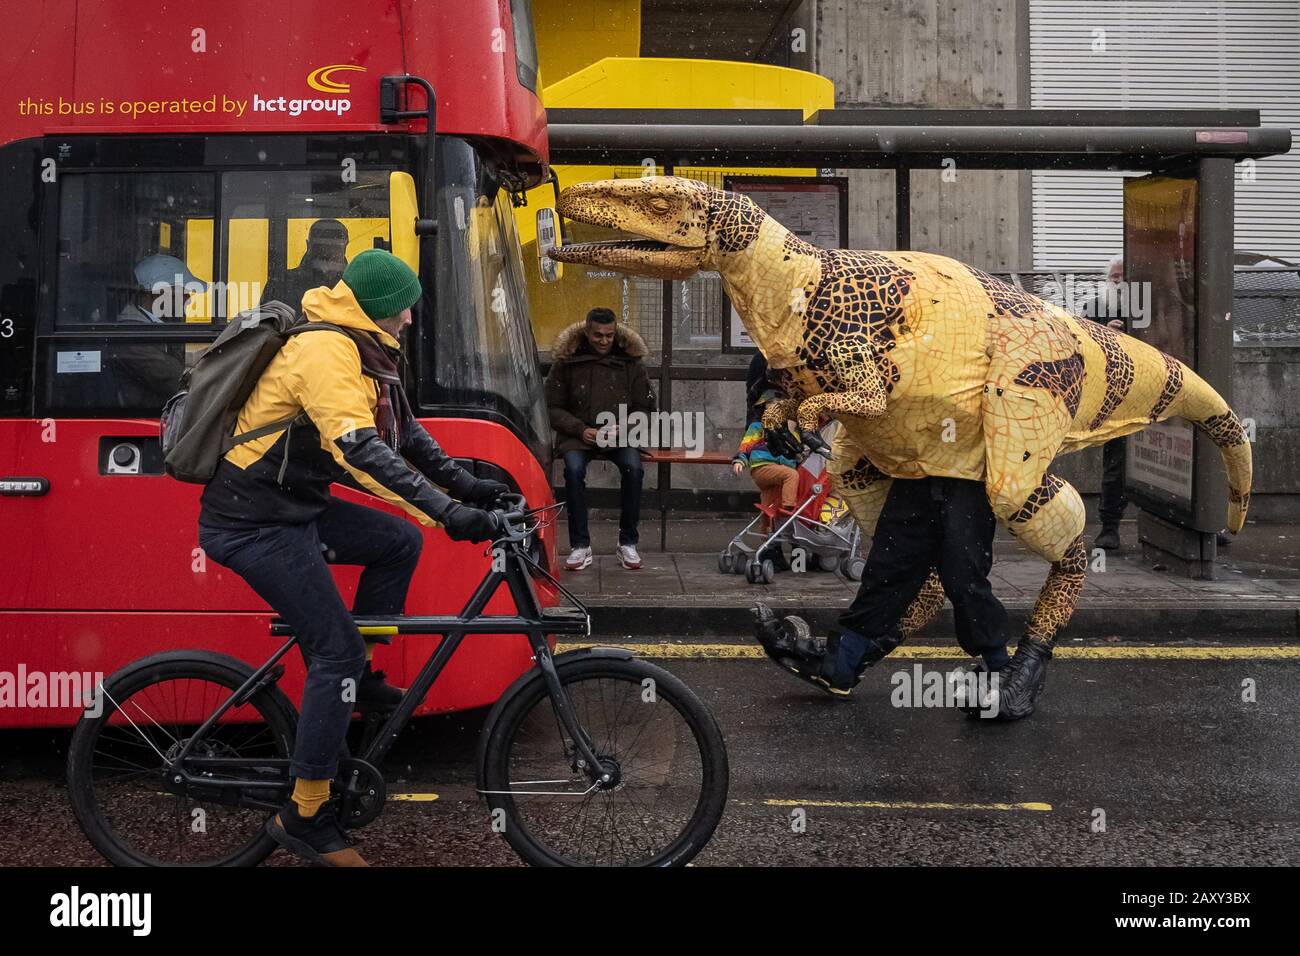 Eine lebensähnliche Dinosaurier-Marionette aus Velociraptor hält einen Bus auf der Waterloo Bridge als Werbestunt für den "Erth's Dinosaur Zoo", Southbank, London, Großbritannien Stockfoto